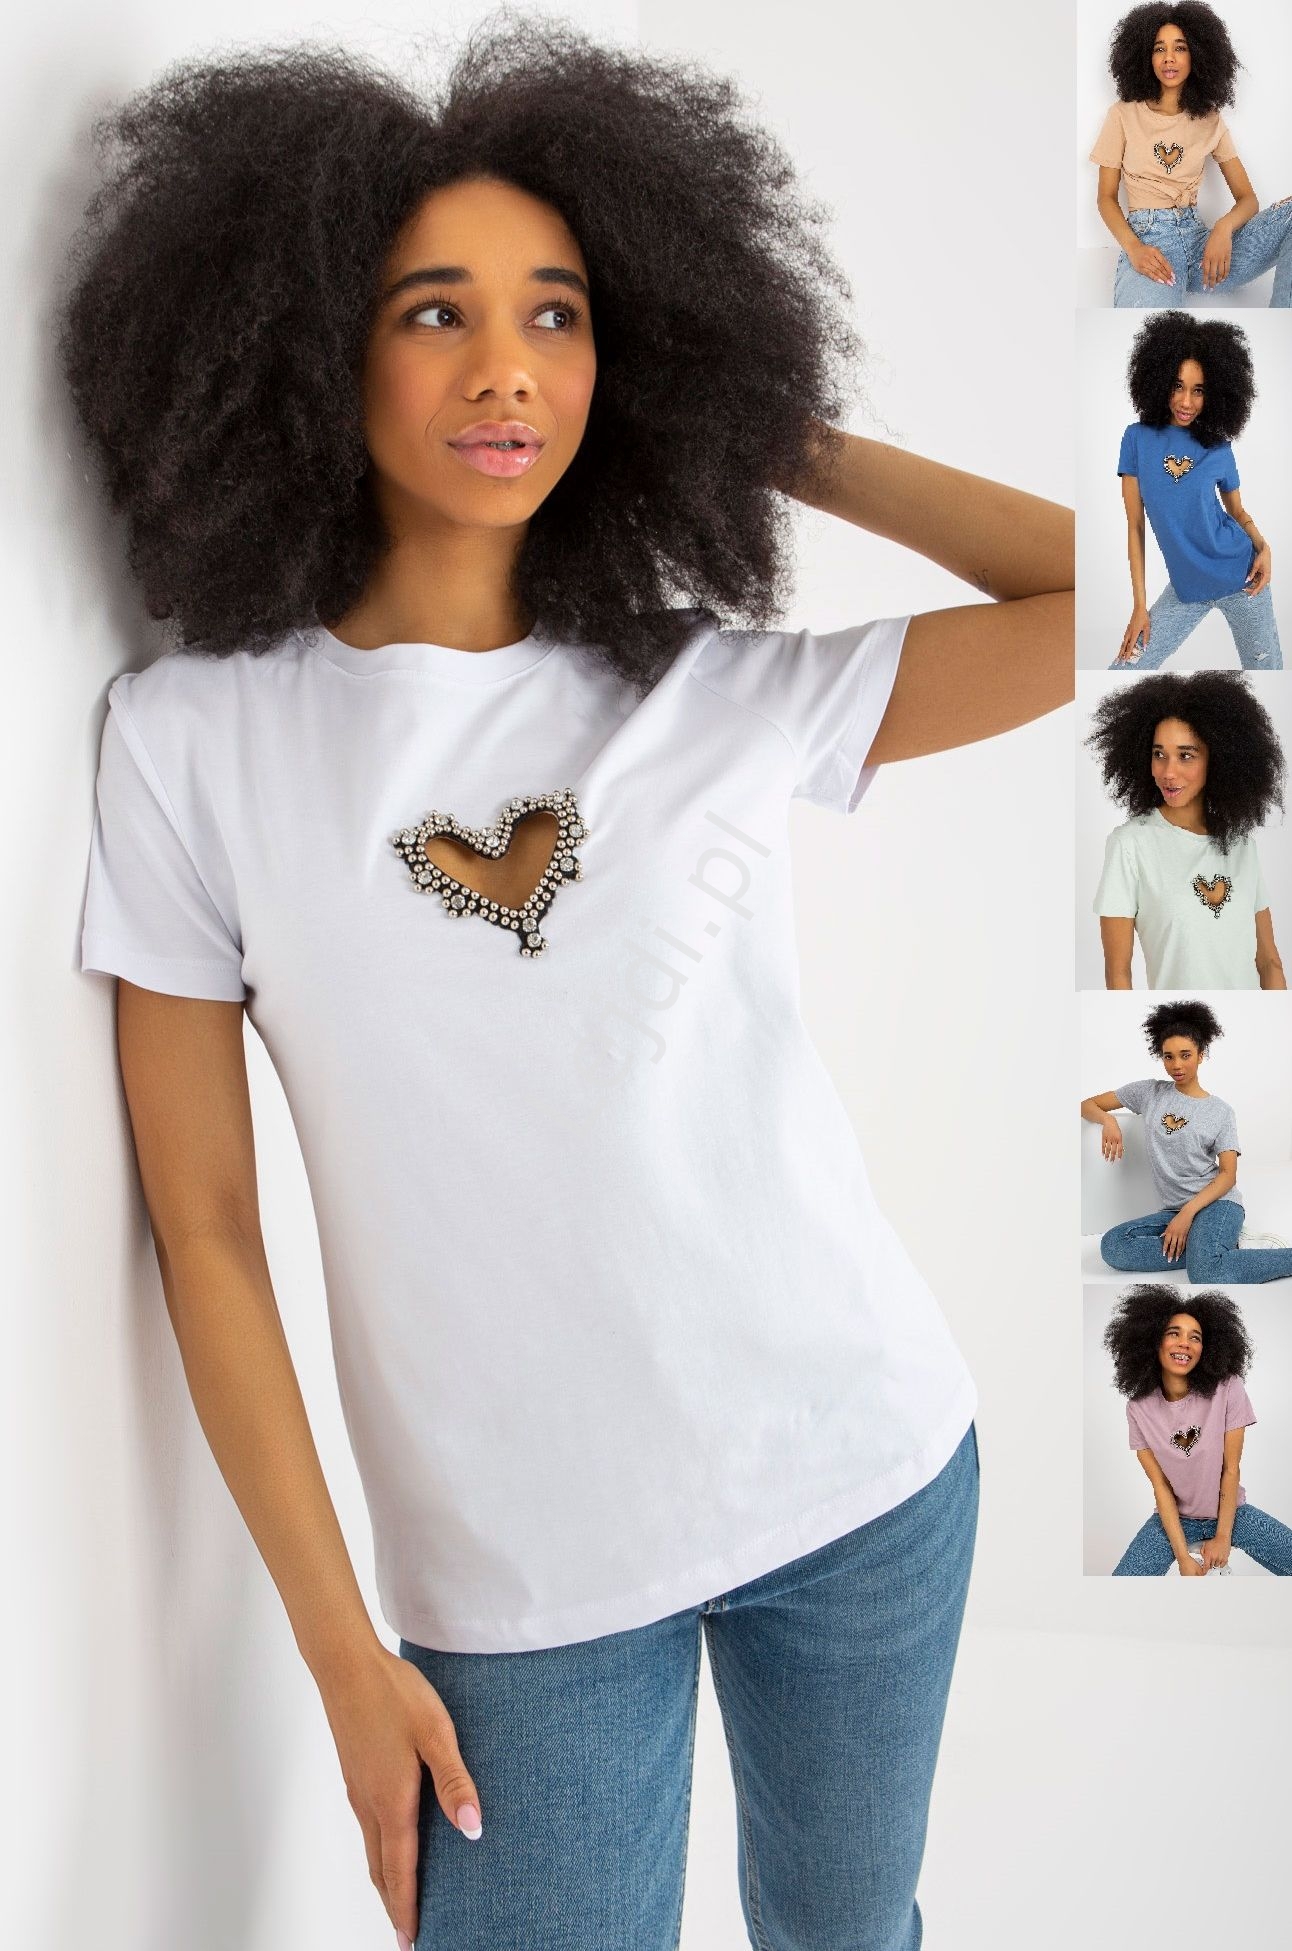 Image of Bawełniana koszulka z wyciętym sercem ozdobionym kryształkami, modny t- shirt z sercem 8470